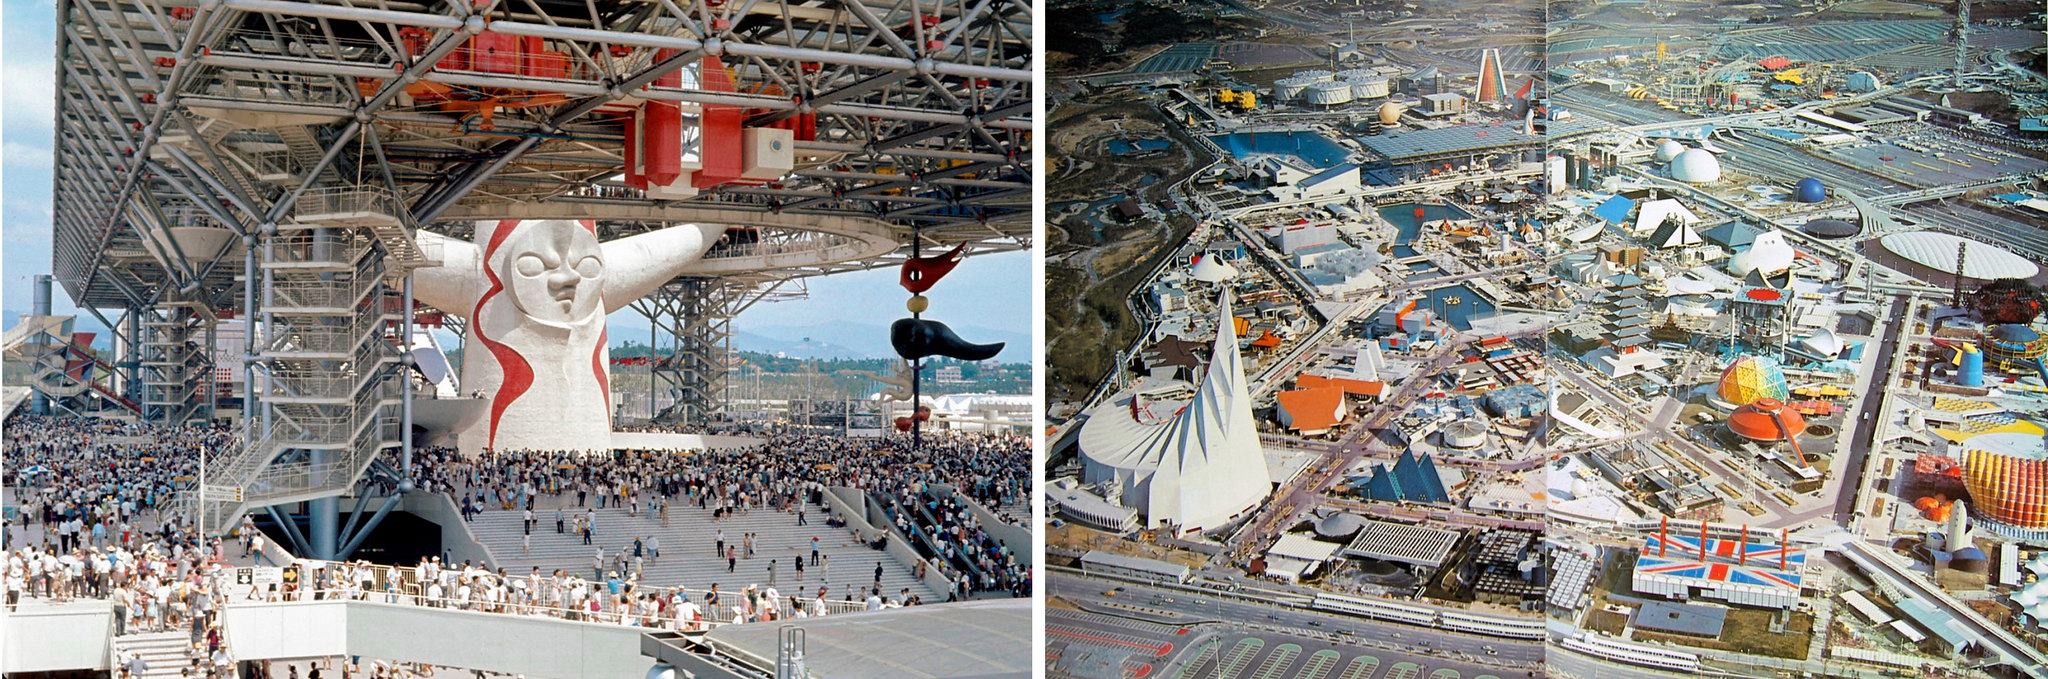 Osaka Expo '70, Japan - Tháp mặt trời tại quảng trường trung tâm EXPO '70  và toàn cảnh Hội chợ.